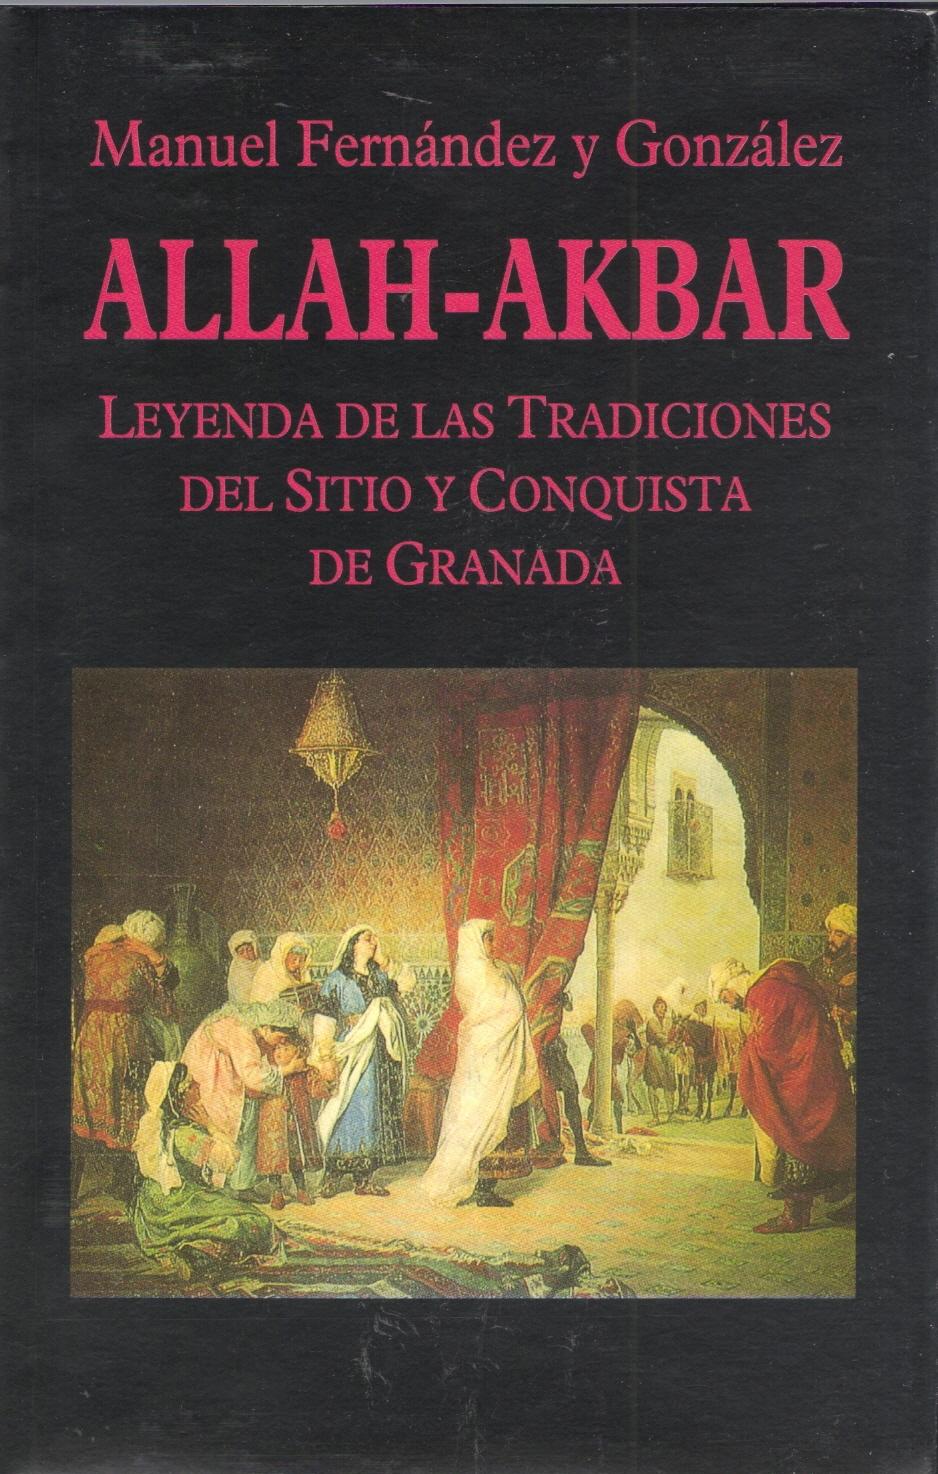 Allah-Akbar. Leyenda de las tradiciones del sitio y conquista de Granada. 